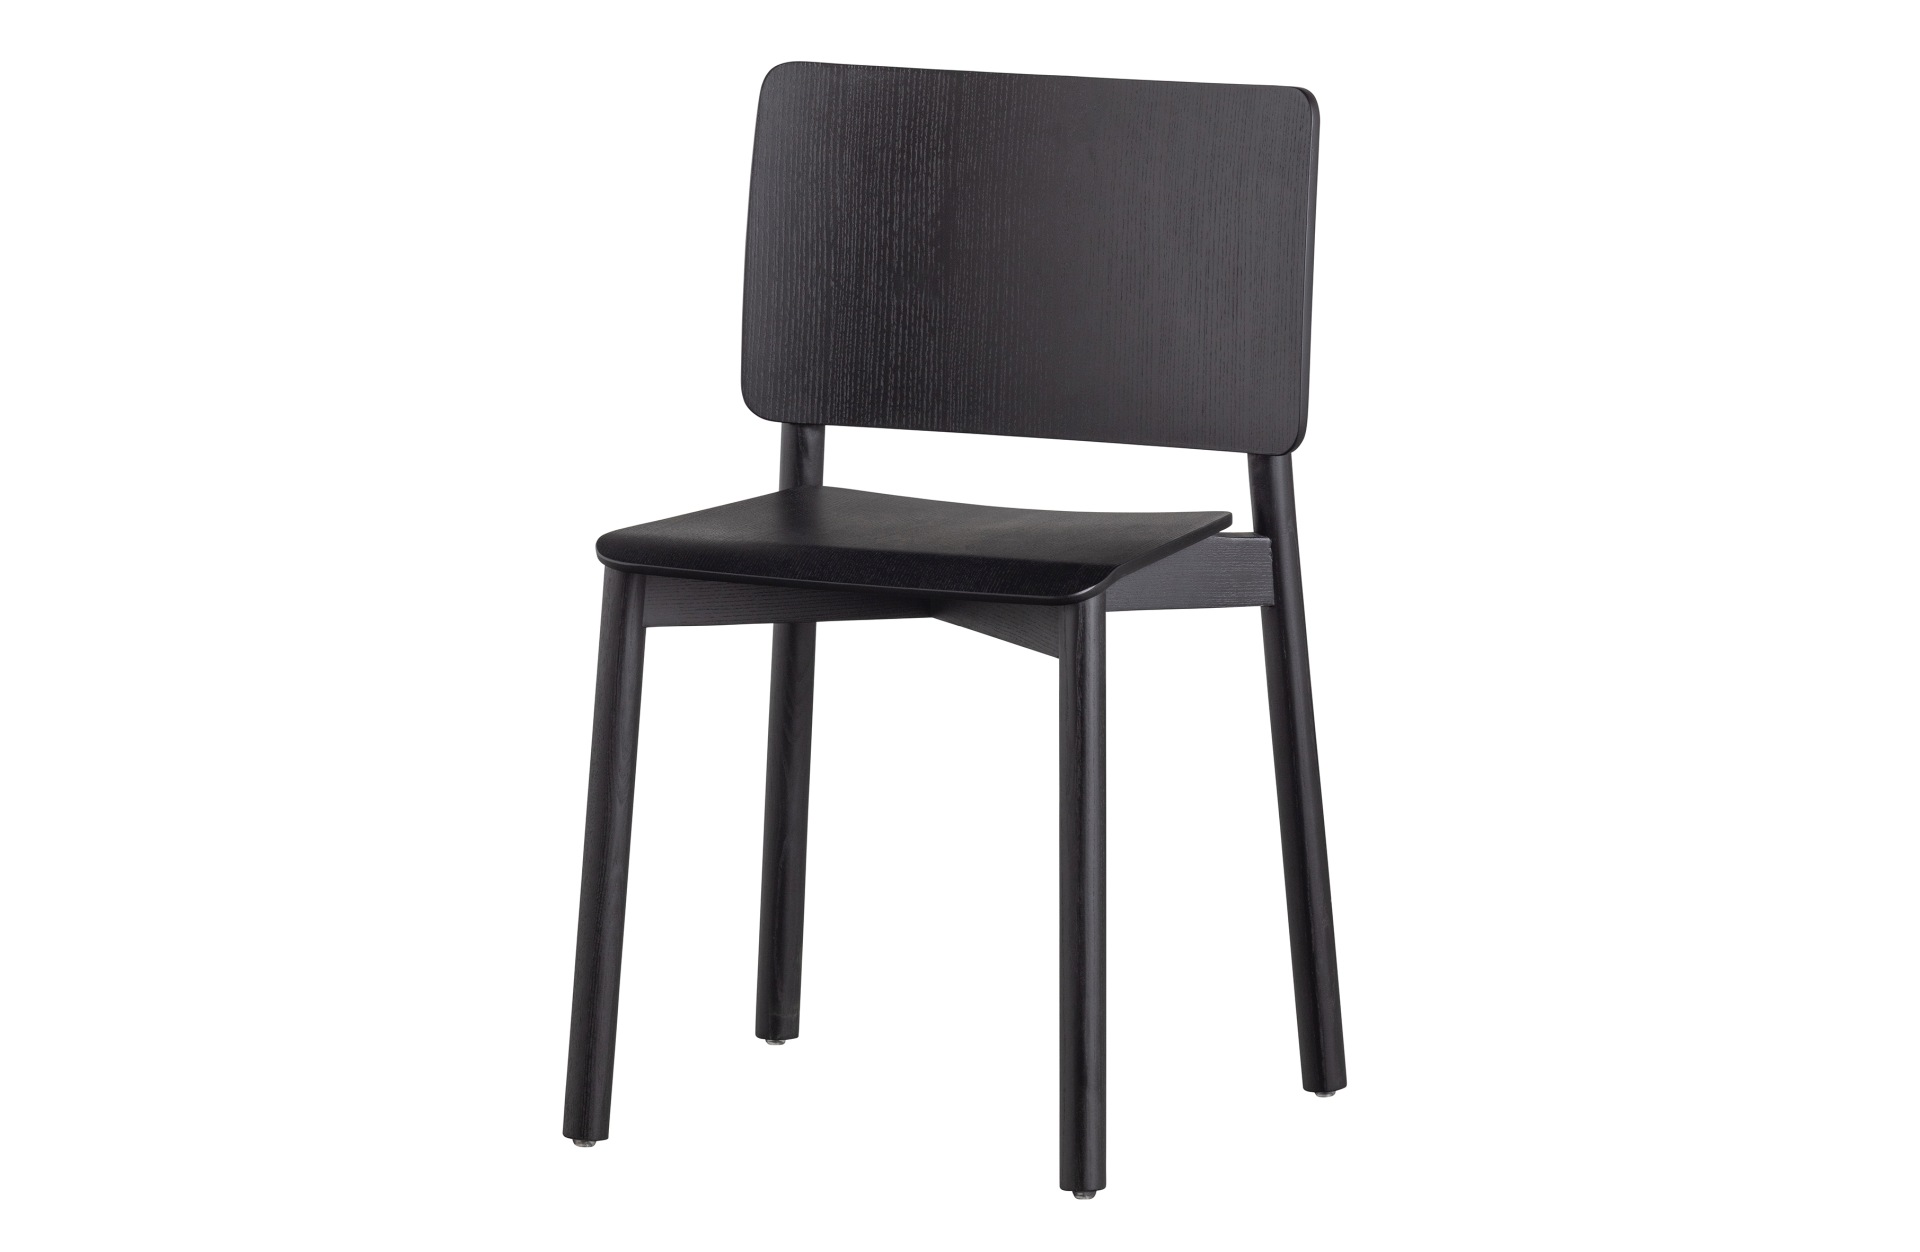 Der Esszimmerstuhl Karel wurde aus Eschenholz gefertigt und besitzt eine schwarze Farbe. Der Stuhl ist in zwei verschiedenen Varianten erhältlich